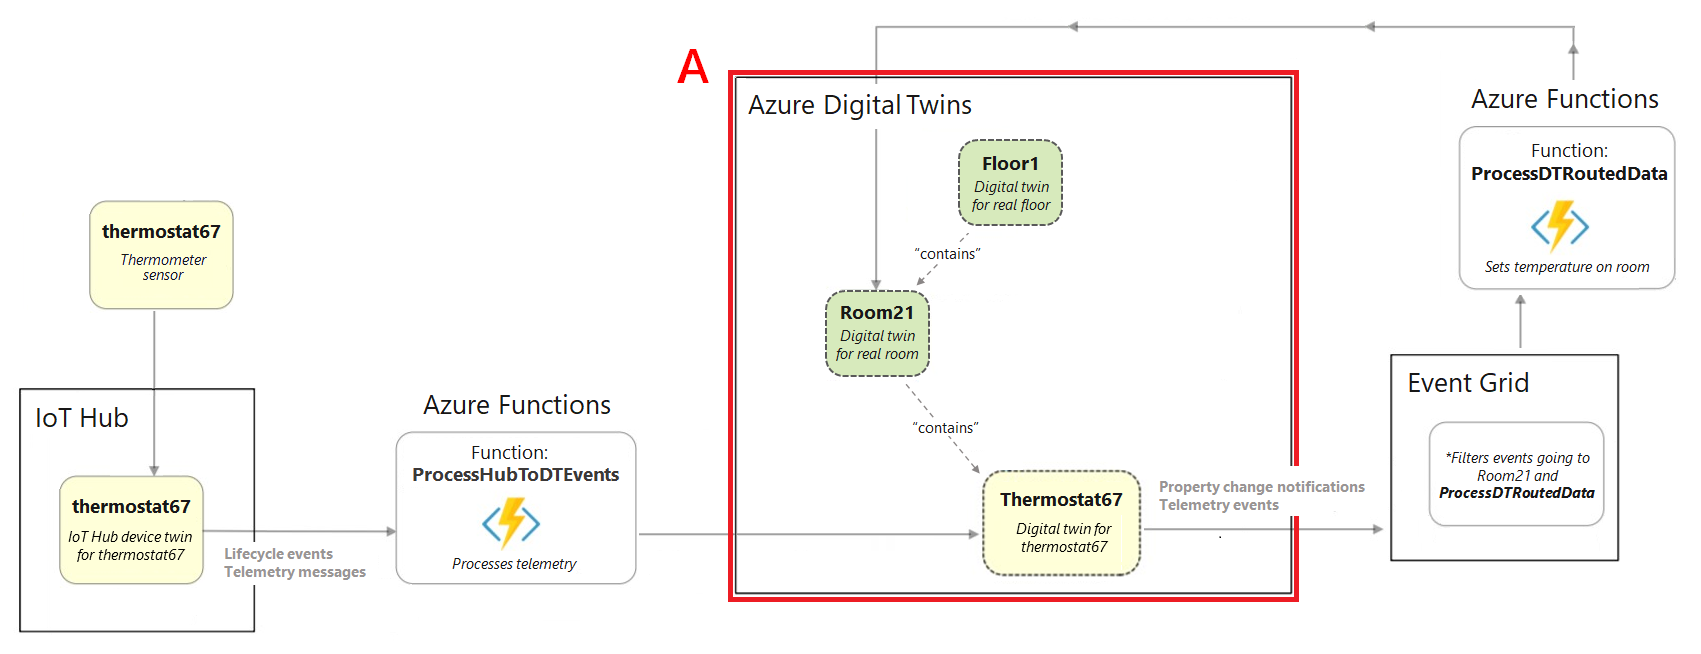 Diagrama de um excerto do diagrama completo do cenário de criação a realçar a secção da instância do Azure Digital Twins.